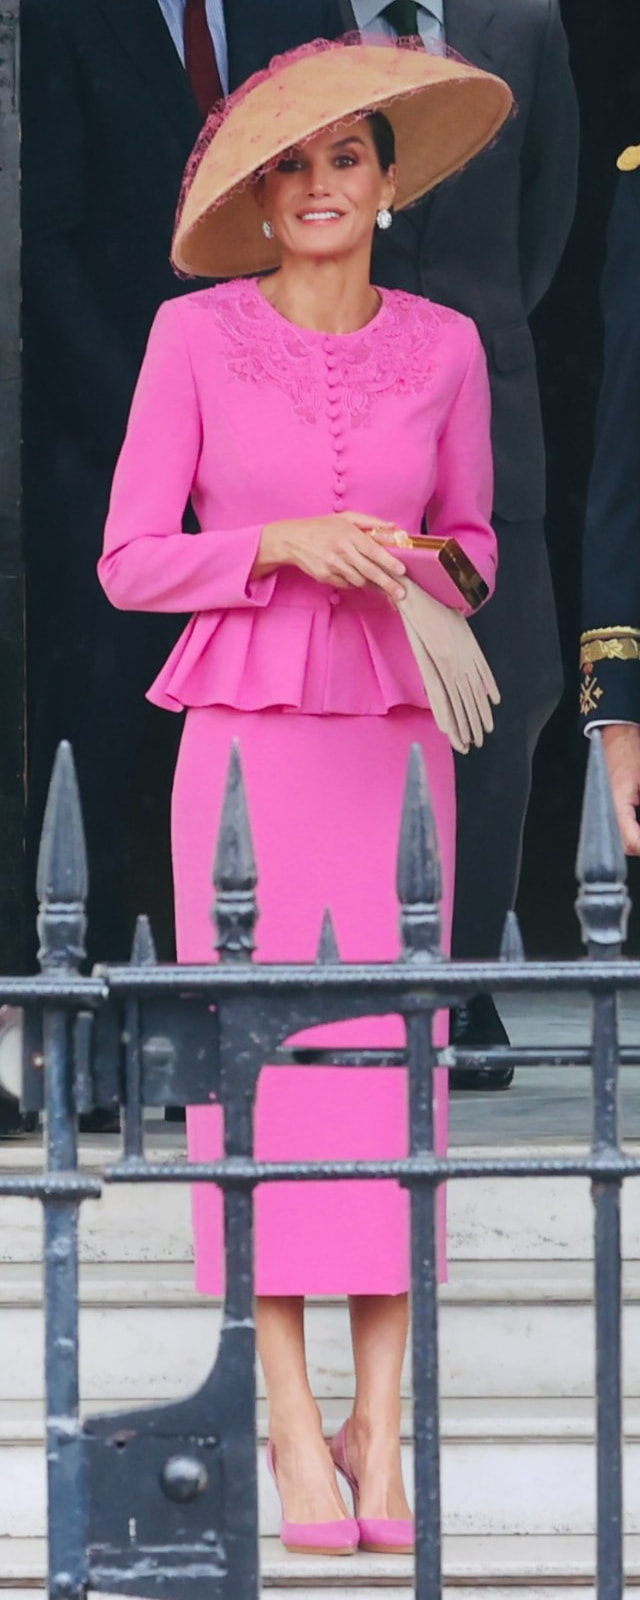 ​Carolina Herrera Scala Insignia Clutch in Pink as carried by Queen Letizia.